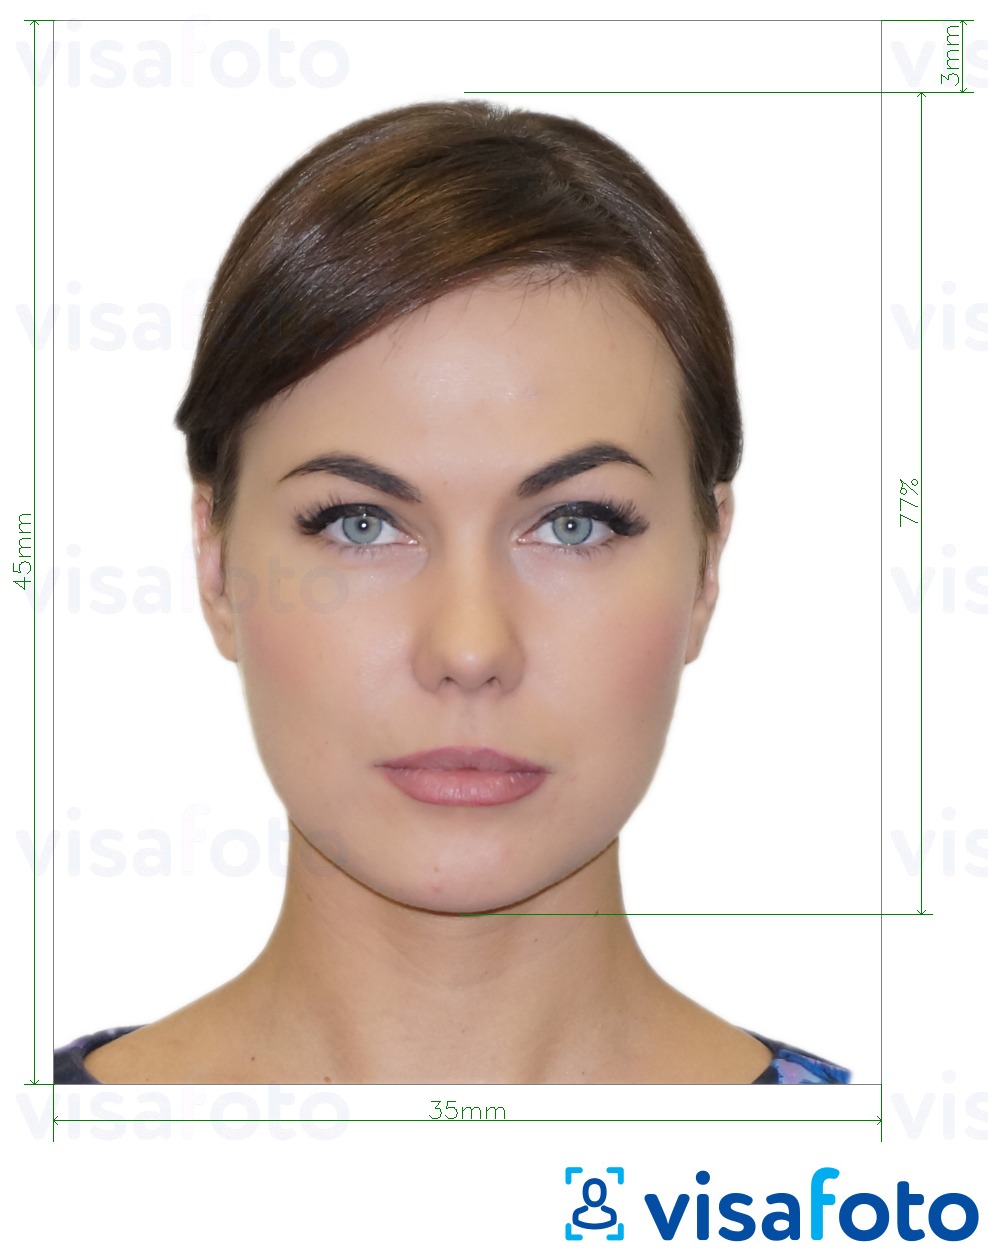 Exemplo de foto para Bilhete de identidade da Suécia 35x45 mm (3,5x4,5 cm) com especificação exata de dimensão